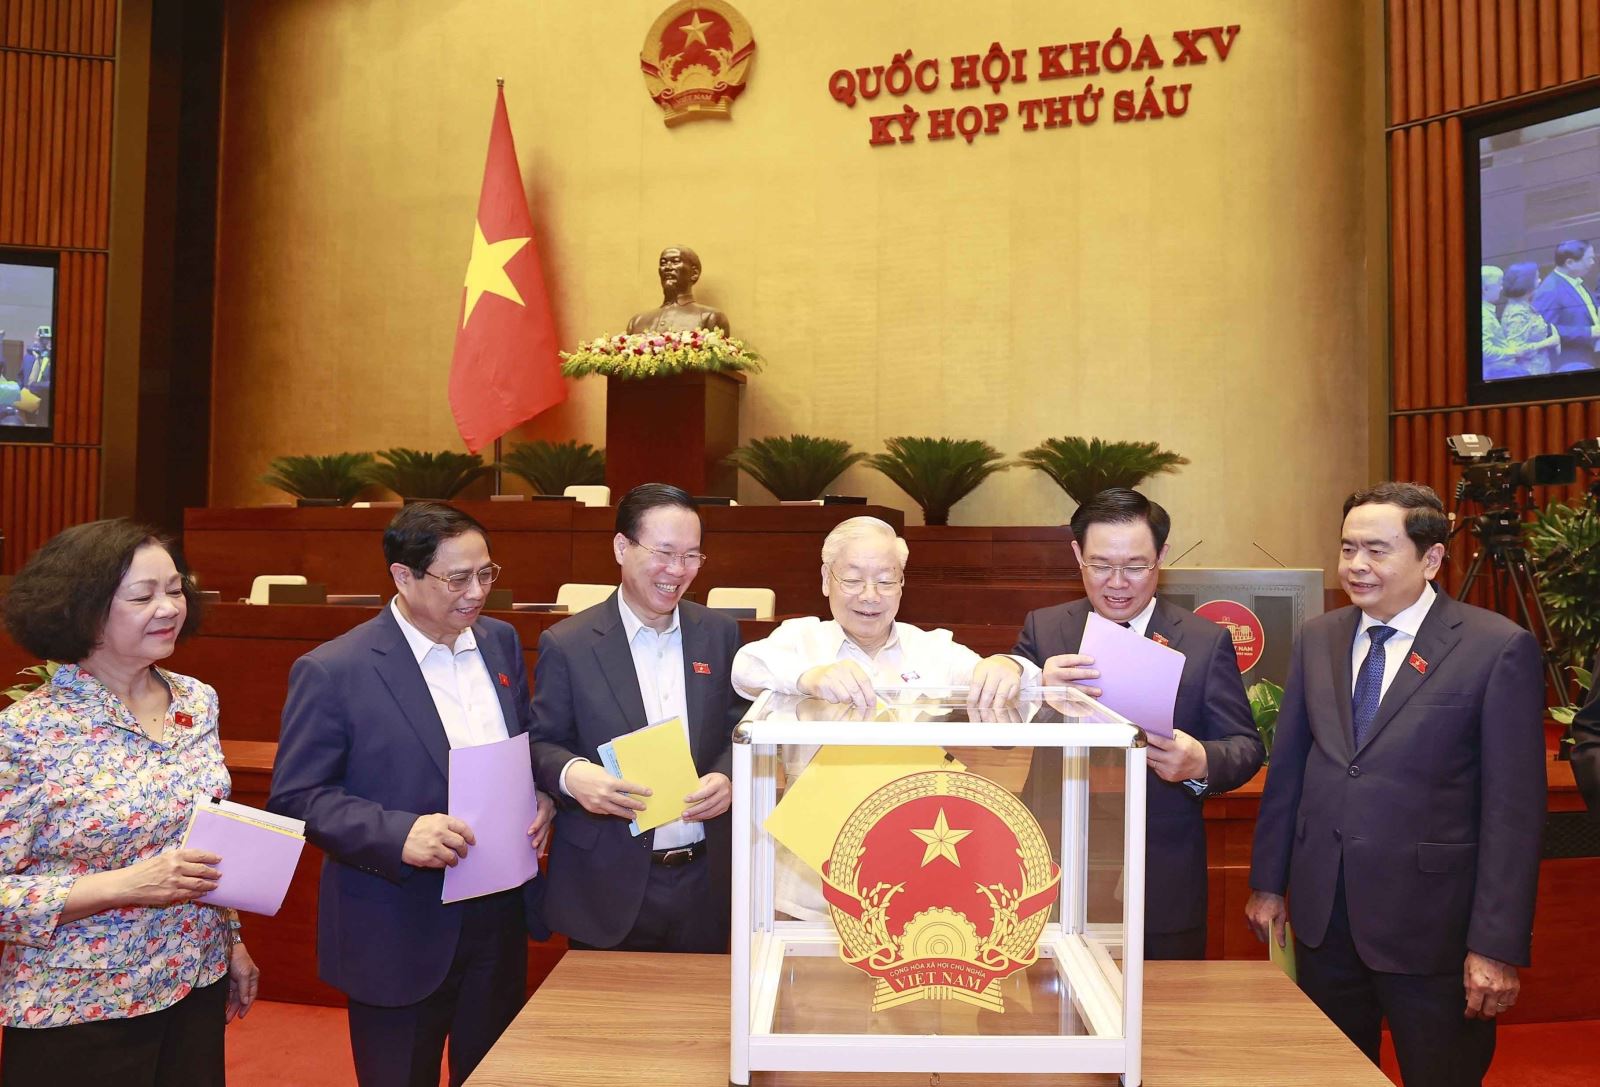 Tổng Bí thư Nguyễn Phú Trọng và các đồng chí lãnh đạo Đảng, Nhà nước bỏ phiếu tín nhiệm. Ảnh: Doãn Tấn/TTXVN